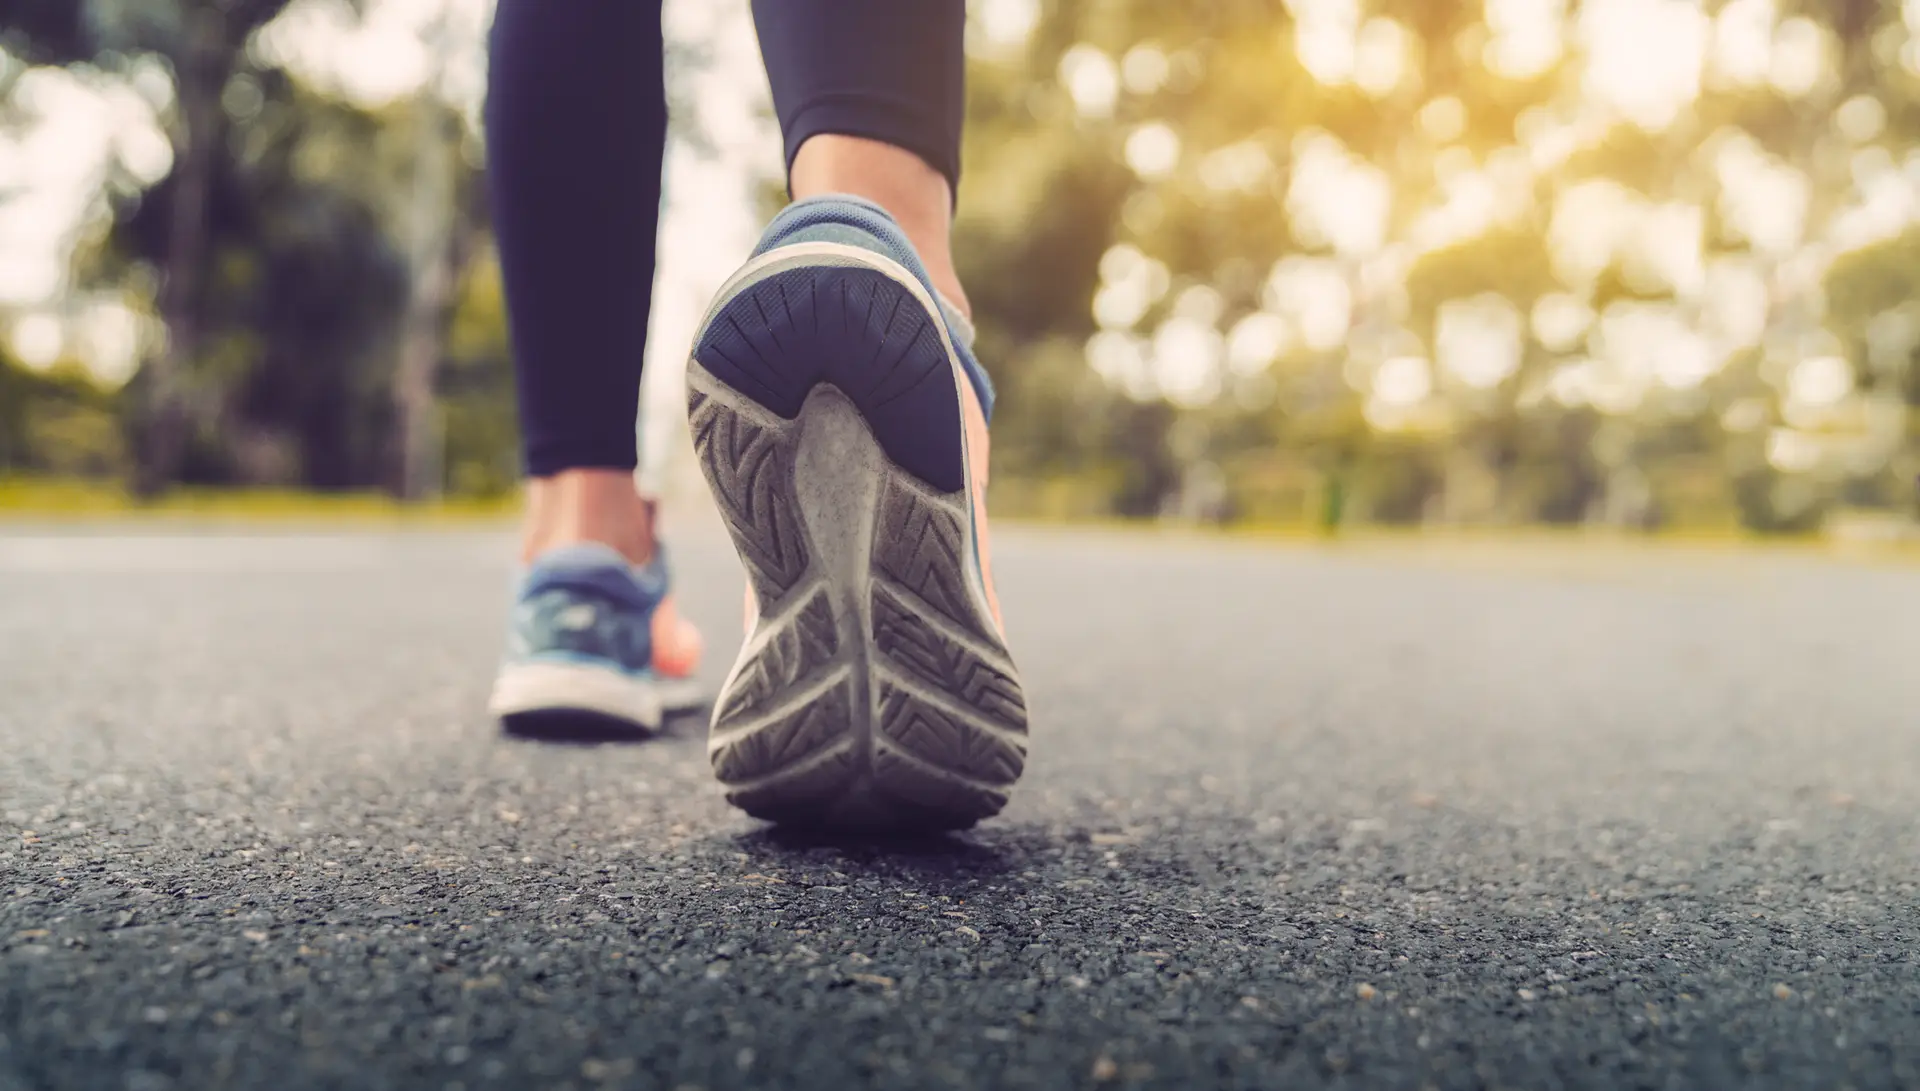 Covid-19: ritmo a que caminhamos pode ser um fator de risco, segundo um estudo britânico